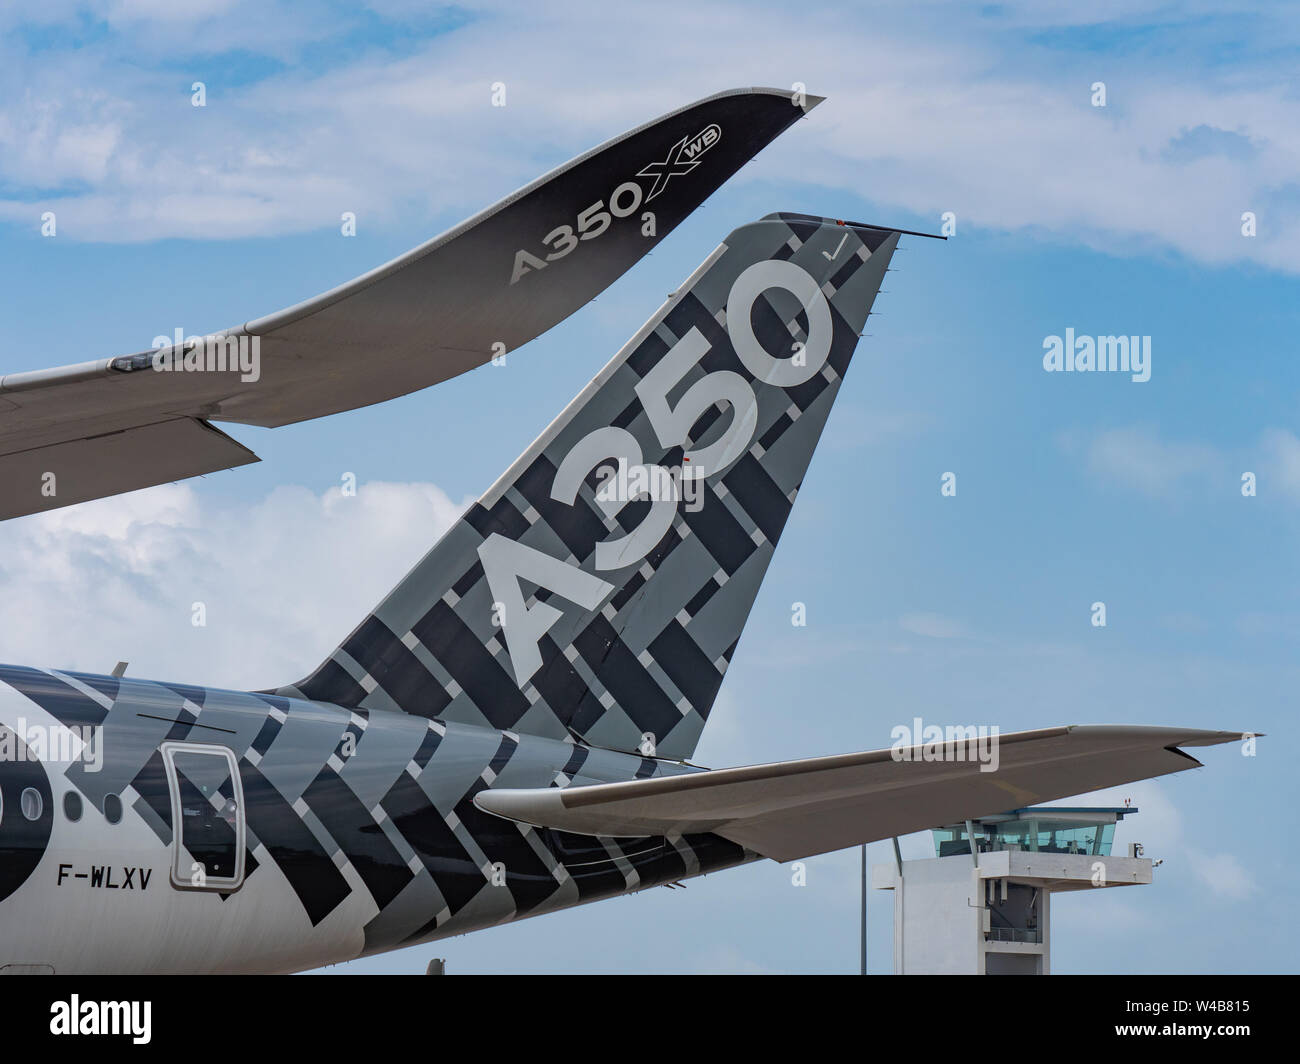 Singapur - Februar 4, 2018: Winglet und höhenleitwerk von Airbus A350-1000 XWB in Airbus Werk Lackierung bei der Singapore Airshow am Changi Exhibition Cen Stockfoto